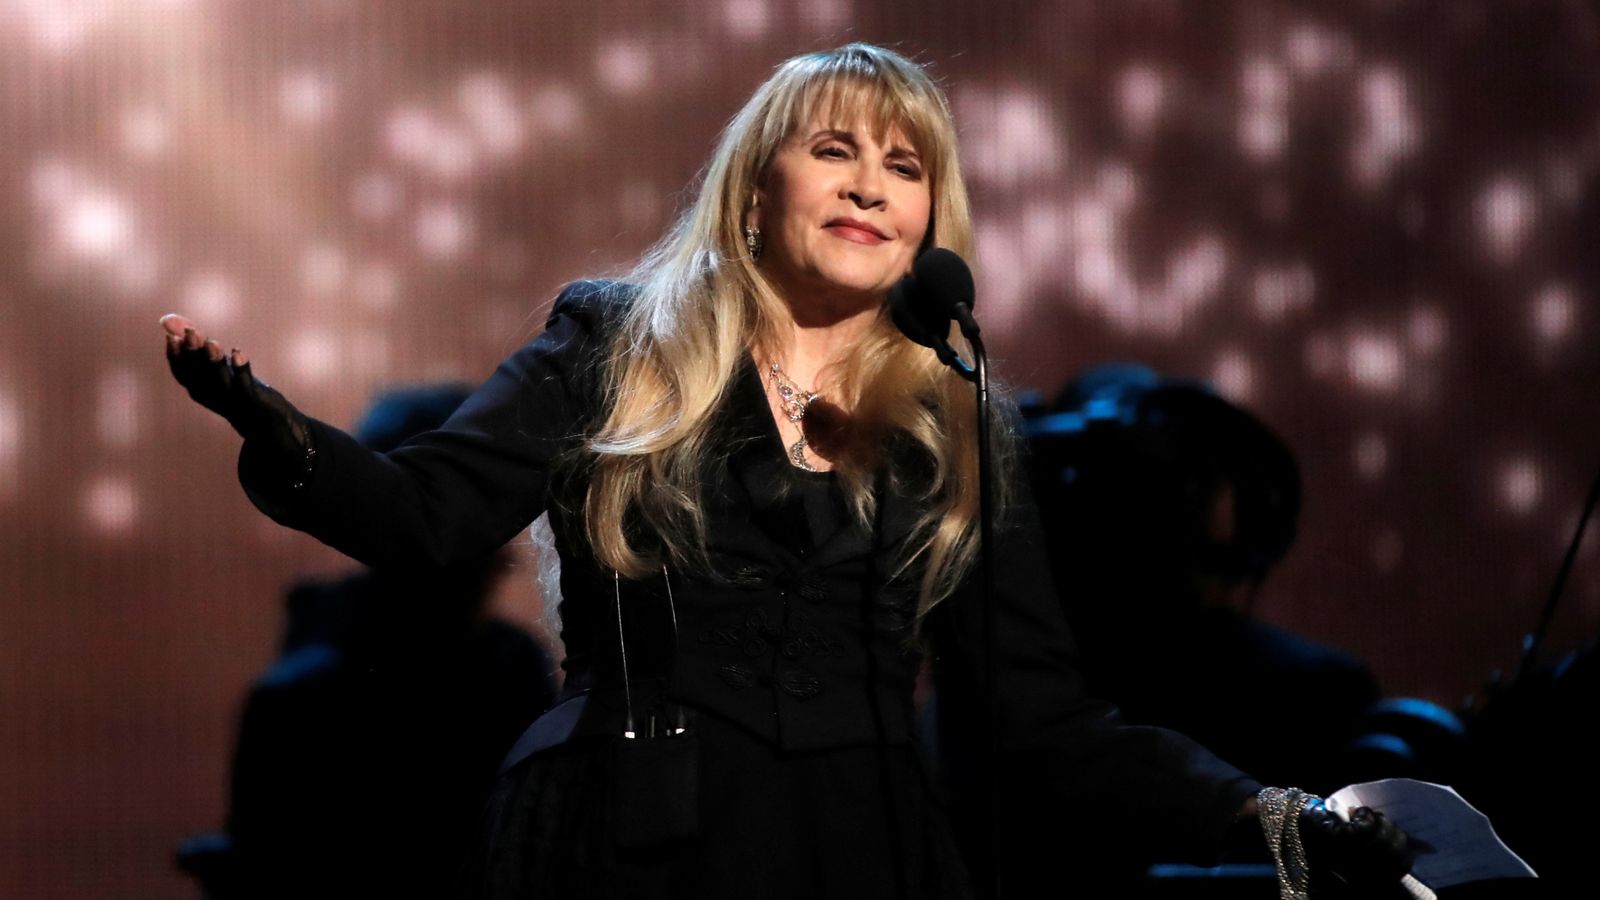 Stevie Nicks: Fleetwood Mac singer has own Barbie doll created 